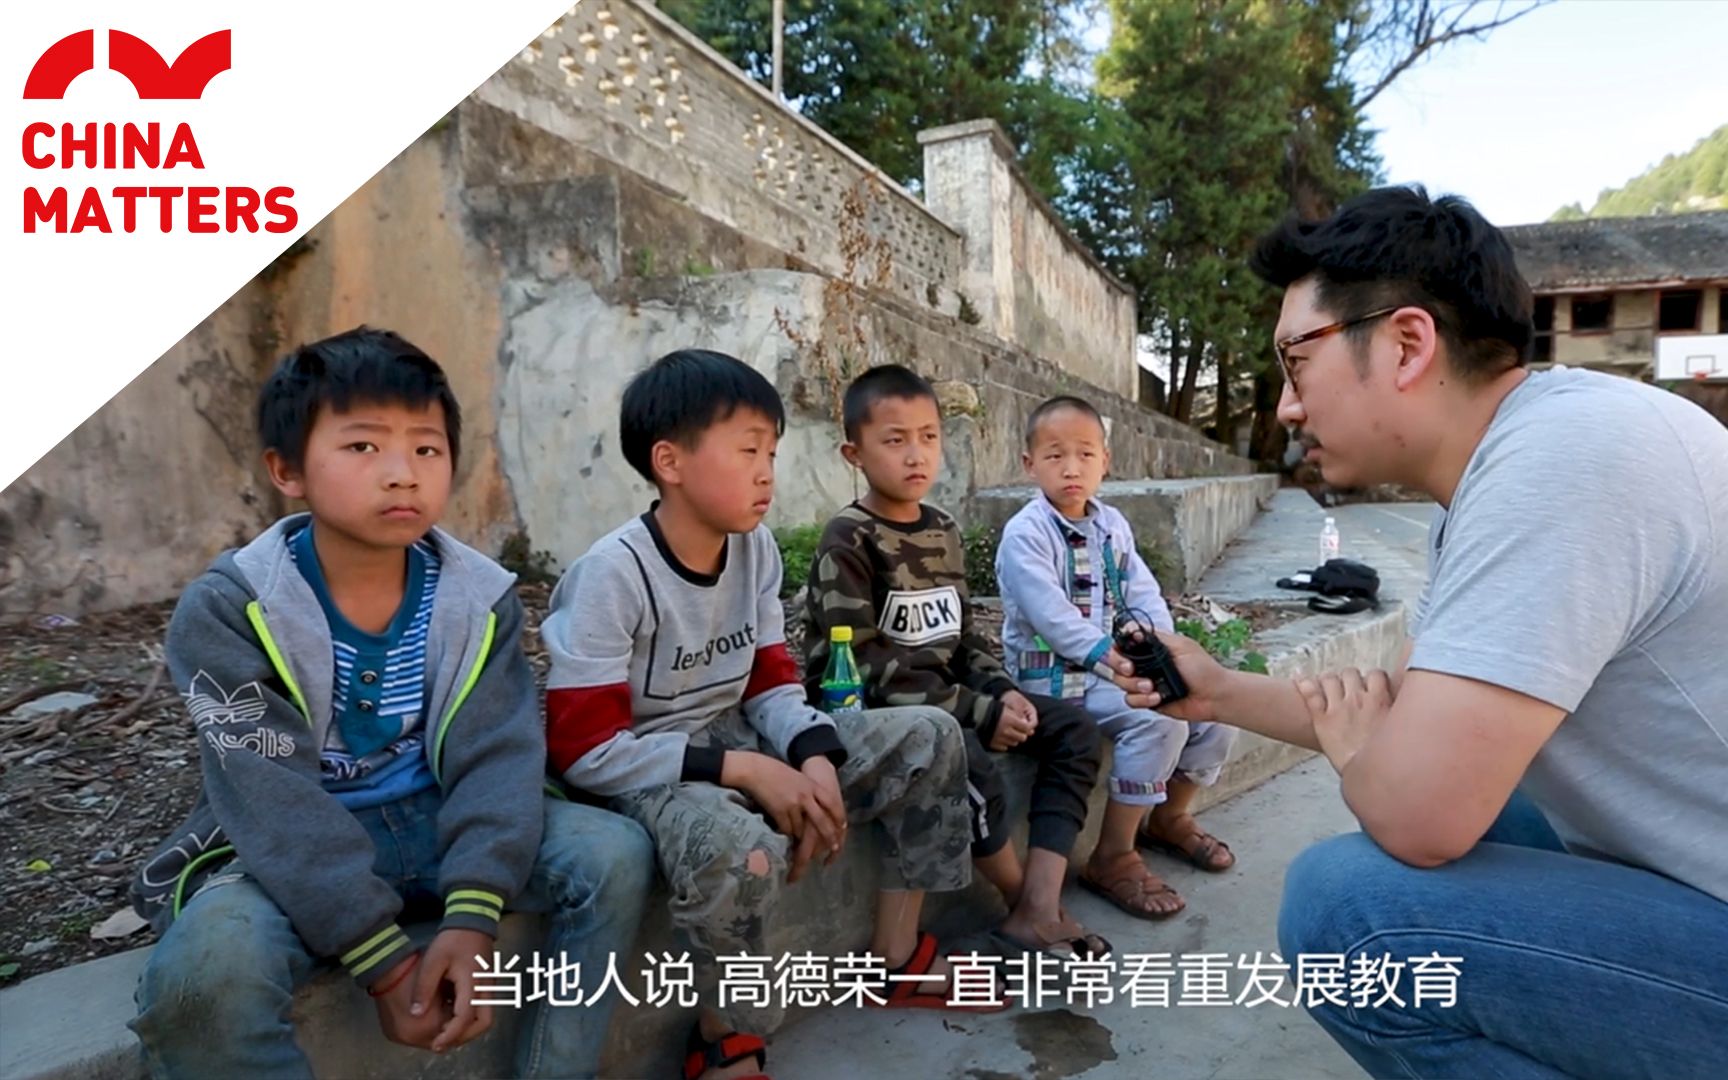 外国记者走进中国最贫困地区，中国扶贫脱贫工作是否取得了实效？